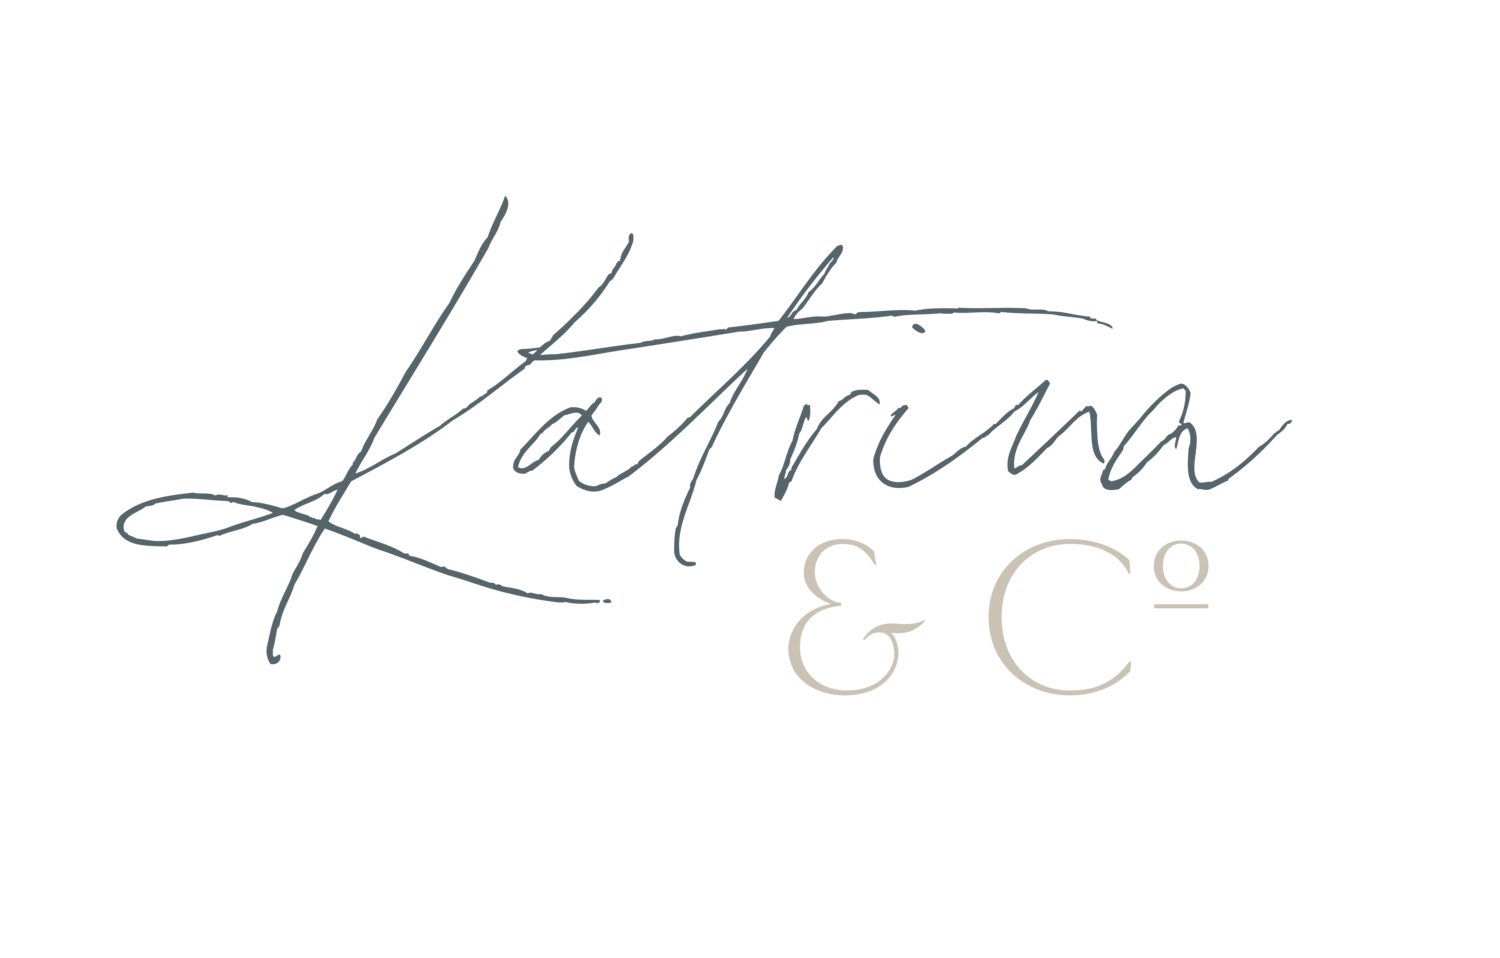 Katrina and Co